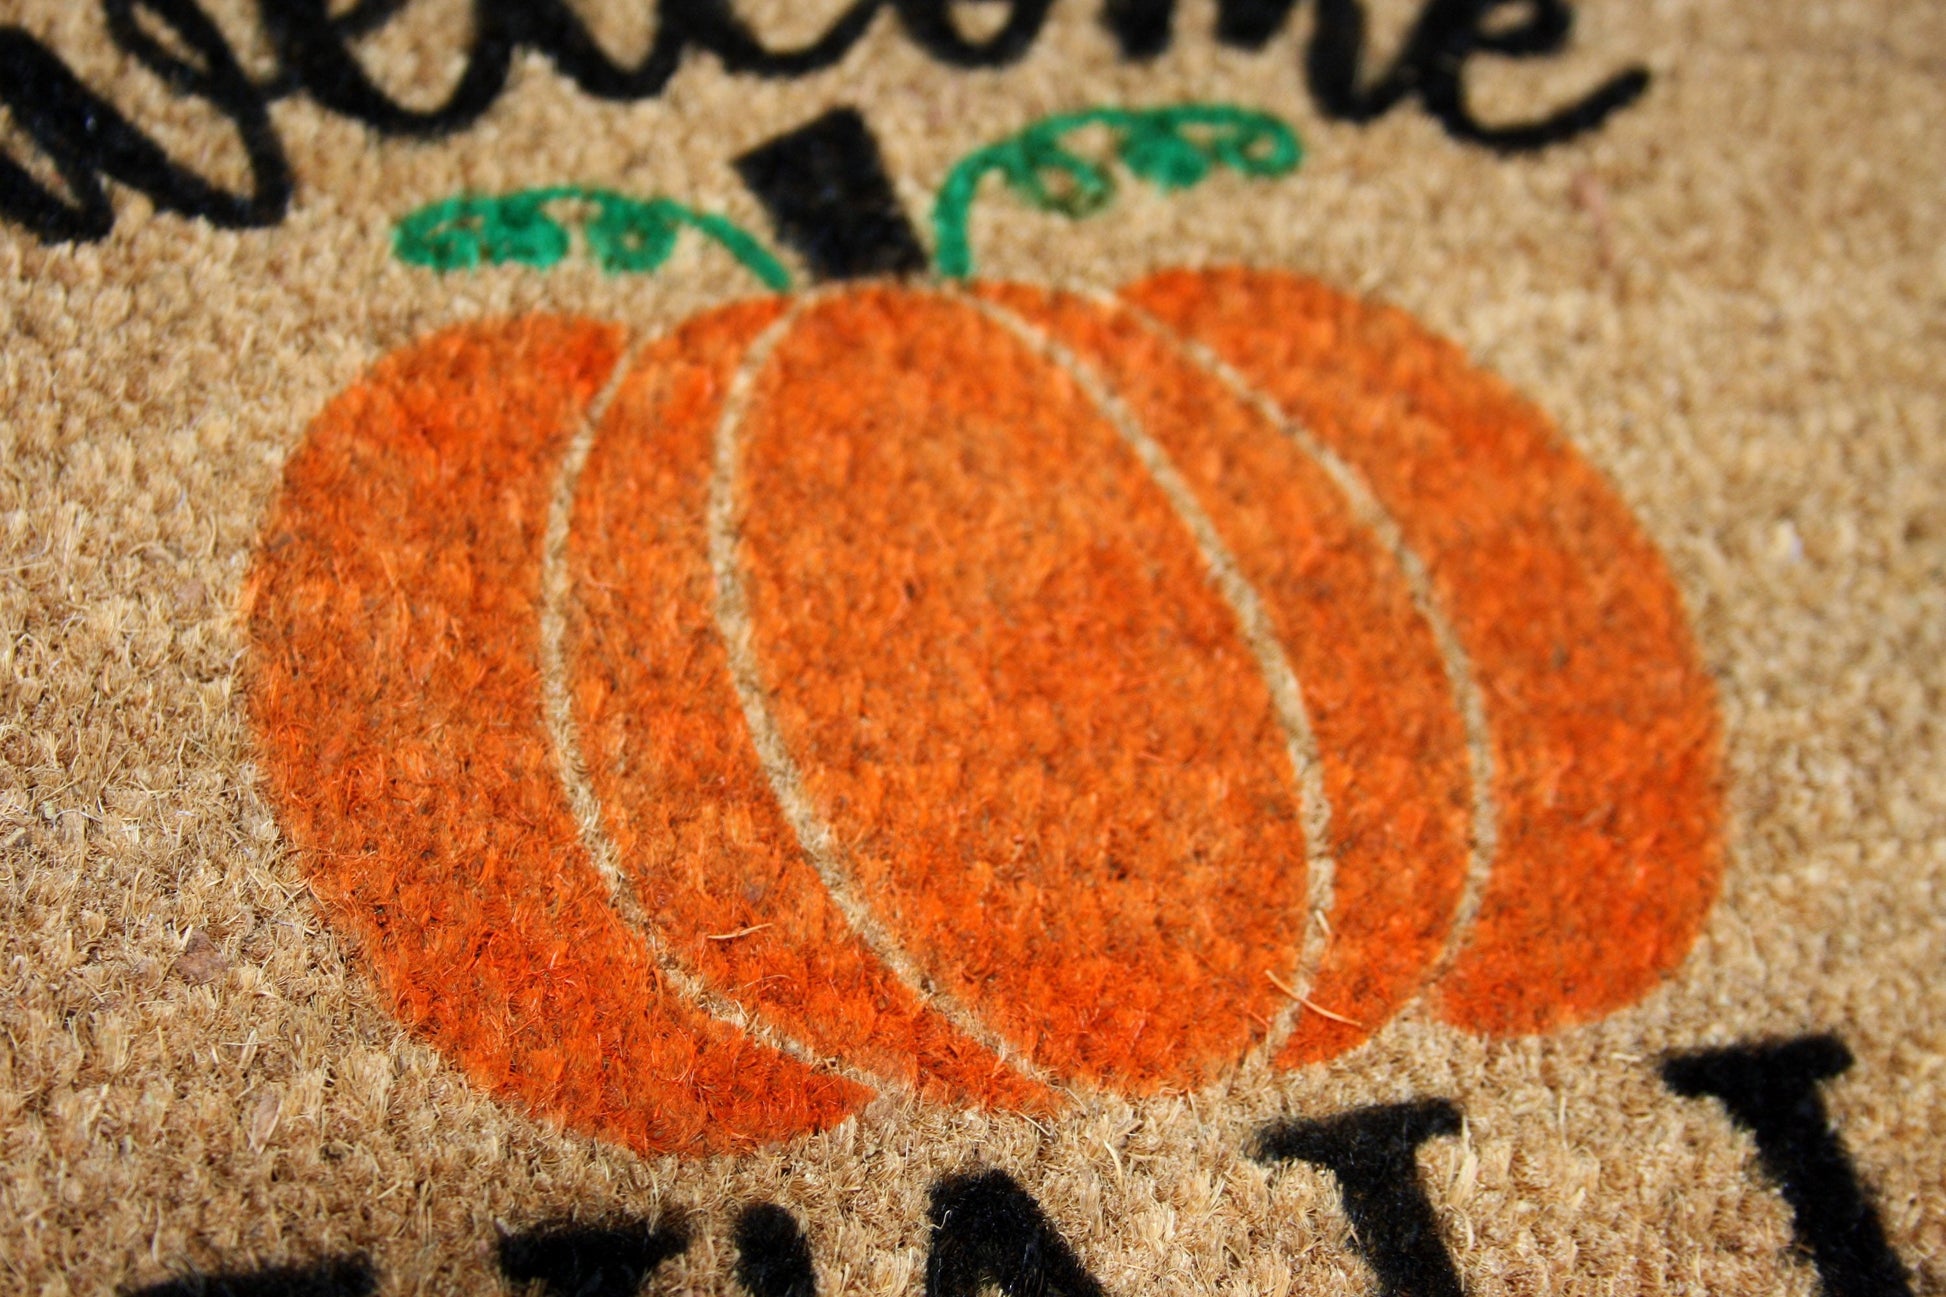 Fall Front Door Mat, Give Thanks Doormat